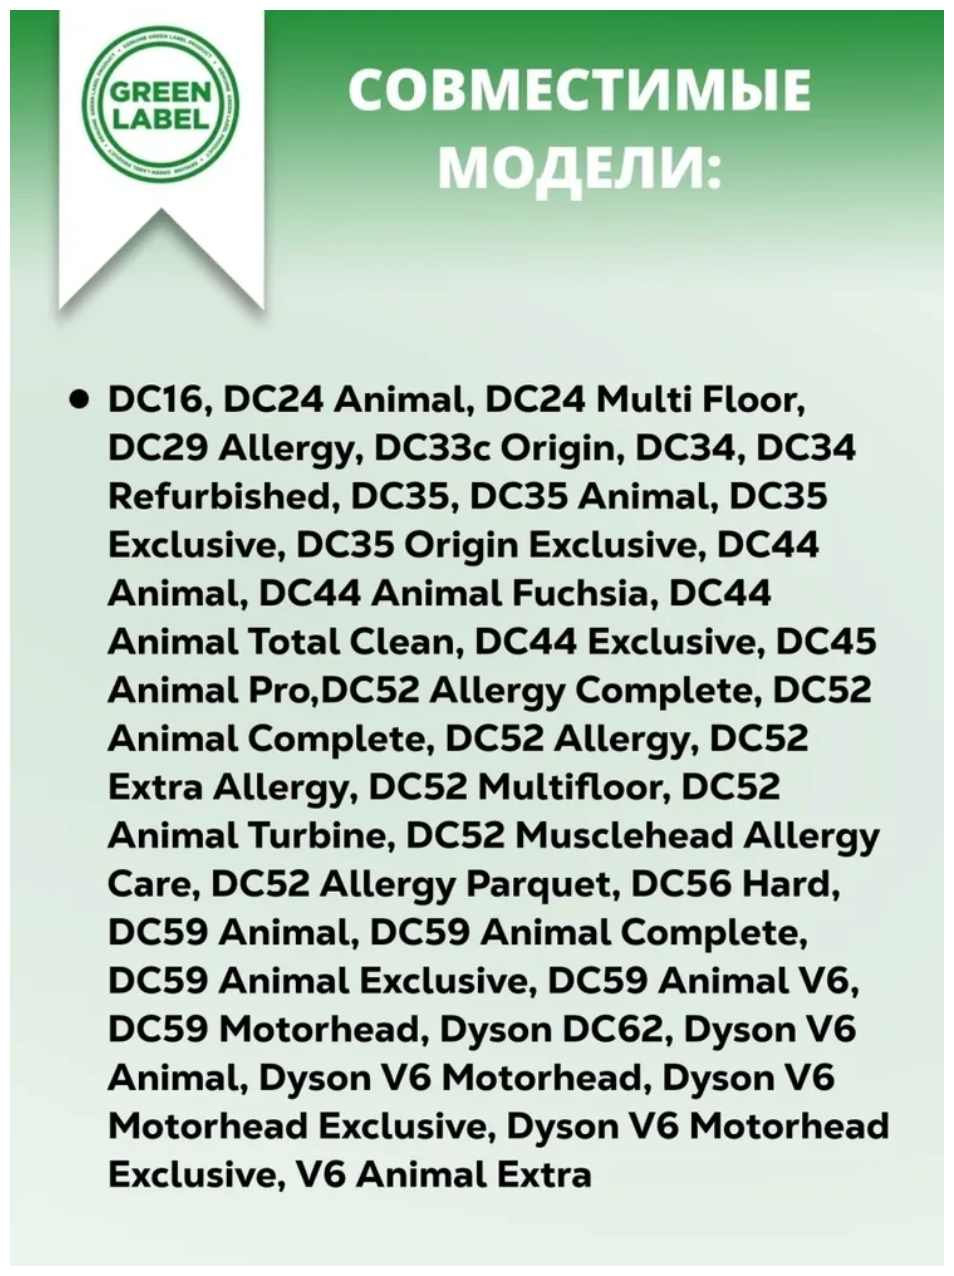 Green Label, Набор щеток для пылесоса Dyson 4 шт, насадки Дайсон для чистки мебели DC16, DC34, DC35, DC44, DC45, DC52, DC56, DC59, V6, DC32